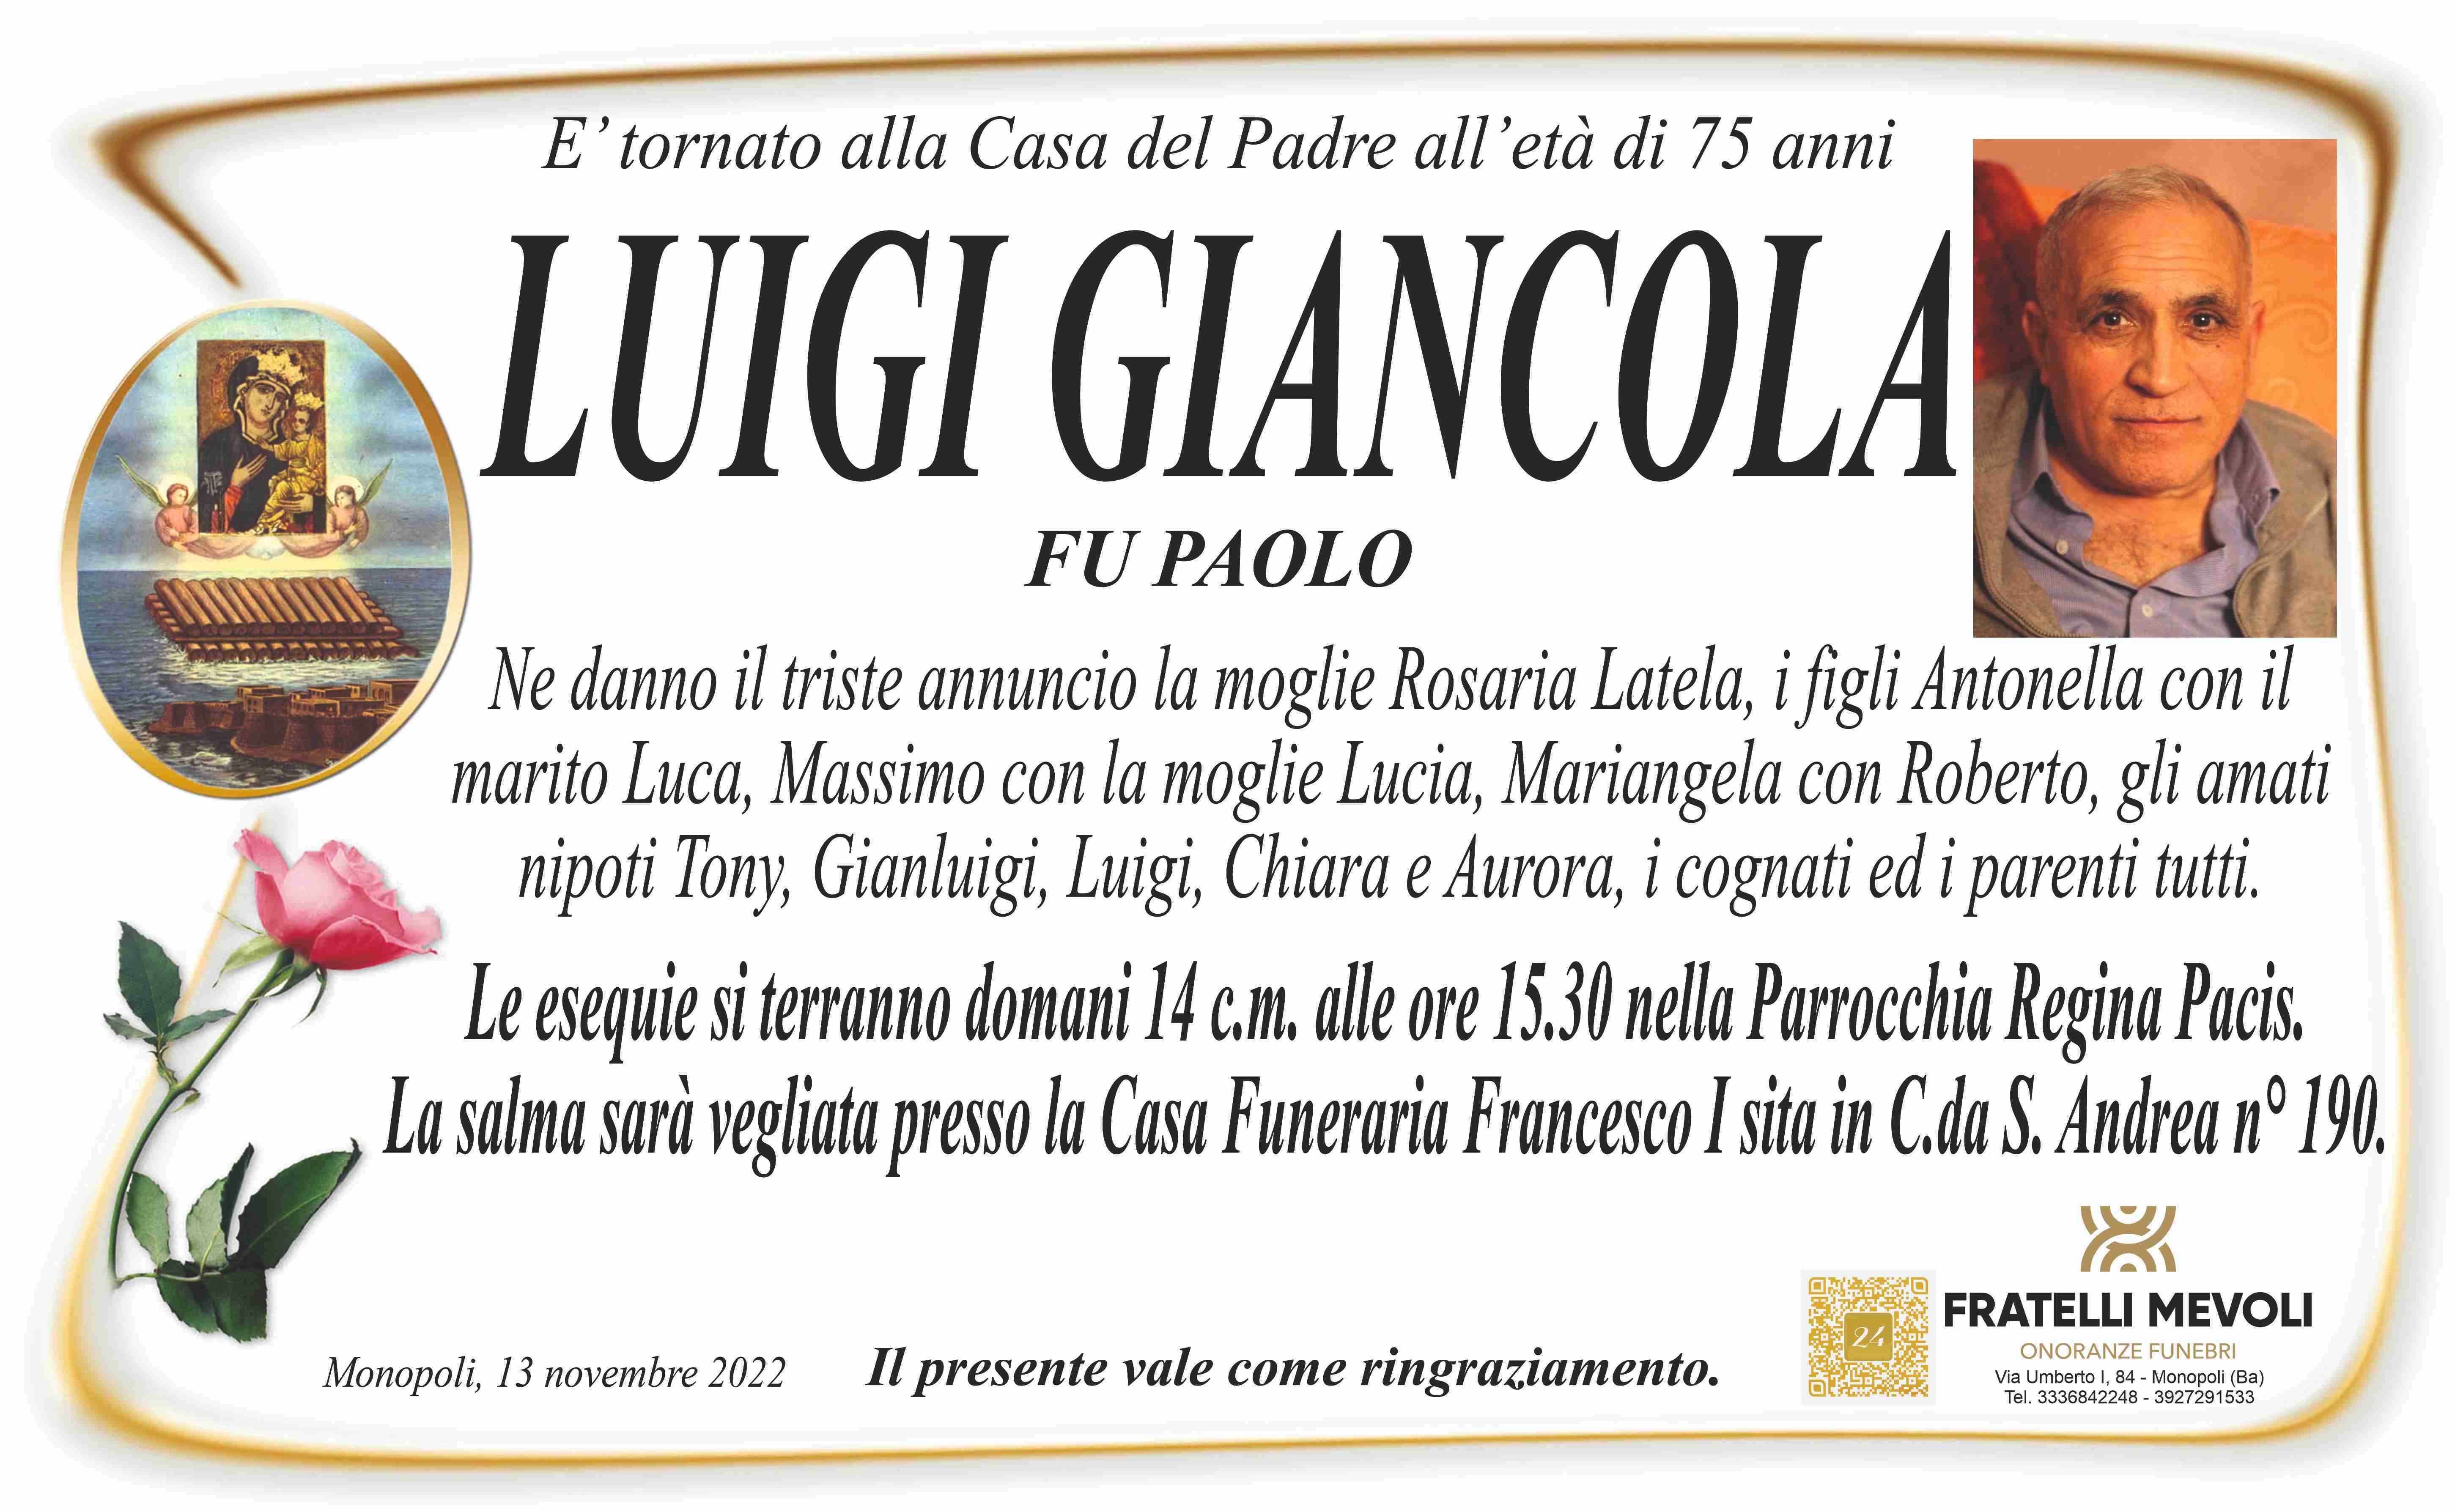 Luigi Giancola